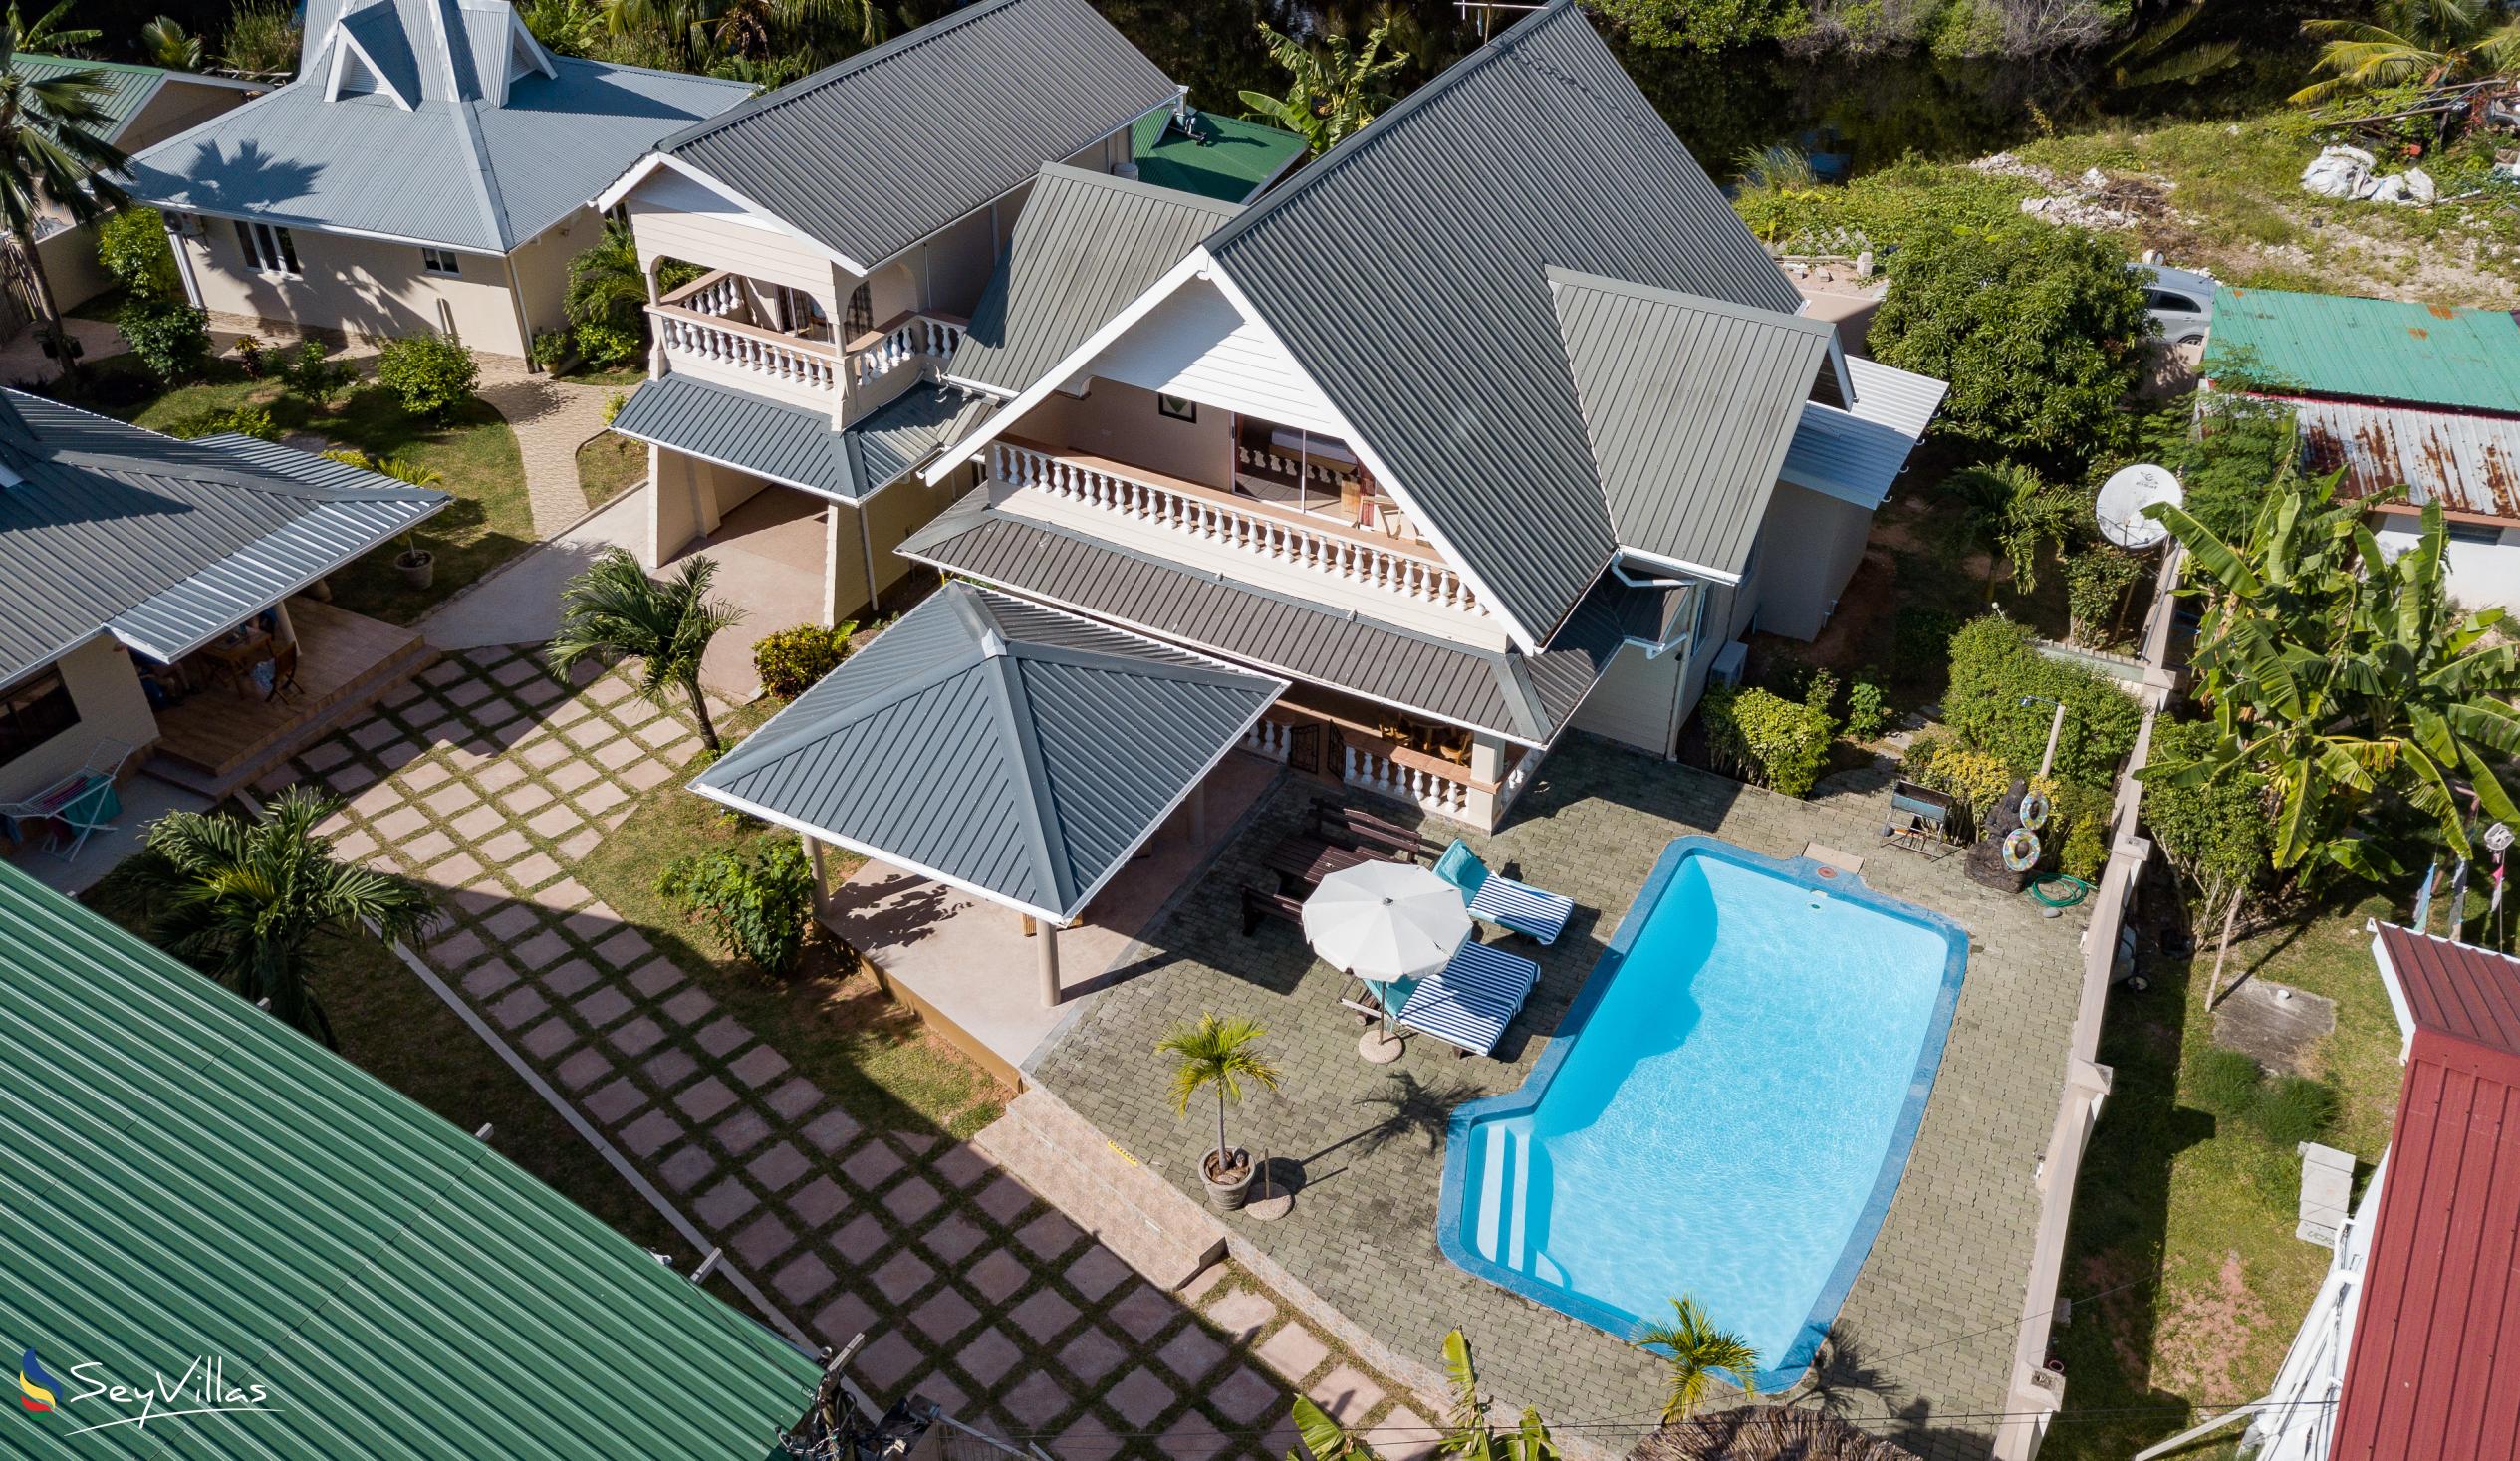 Photo 2: Villa Aya - Outdoor area - Praslin (Seychelles)